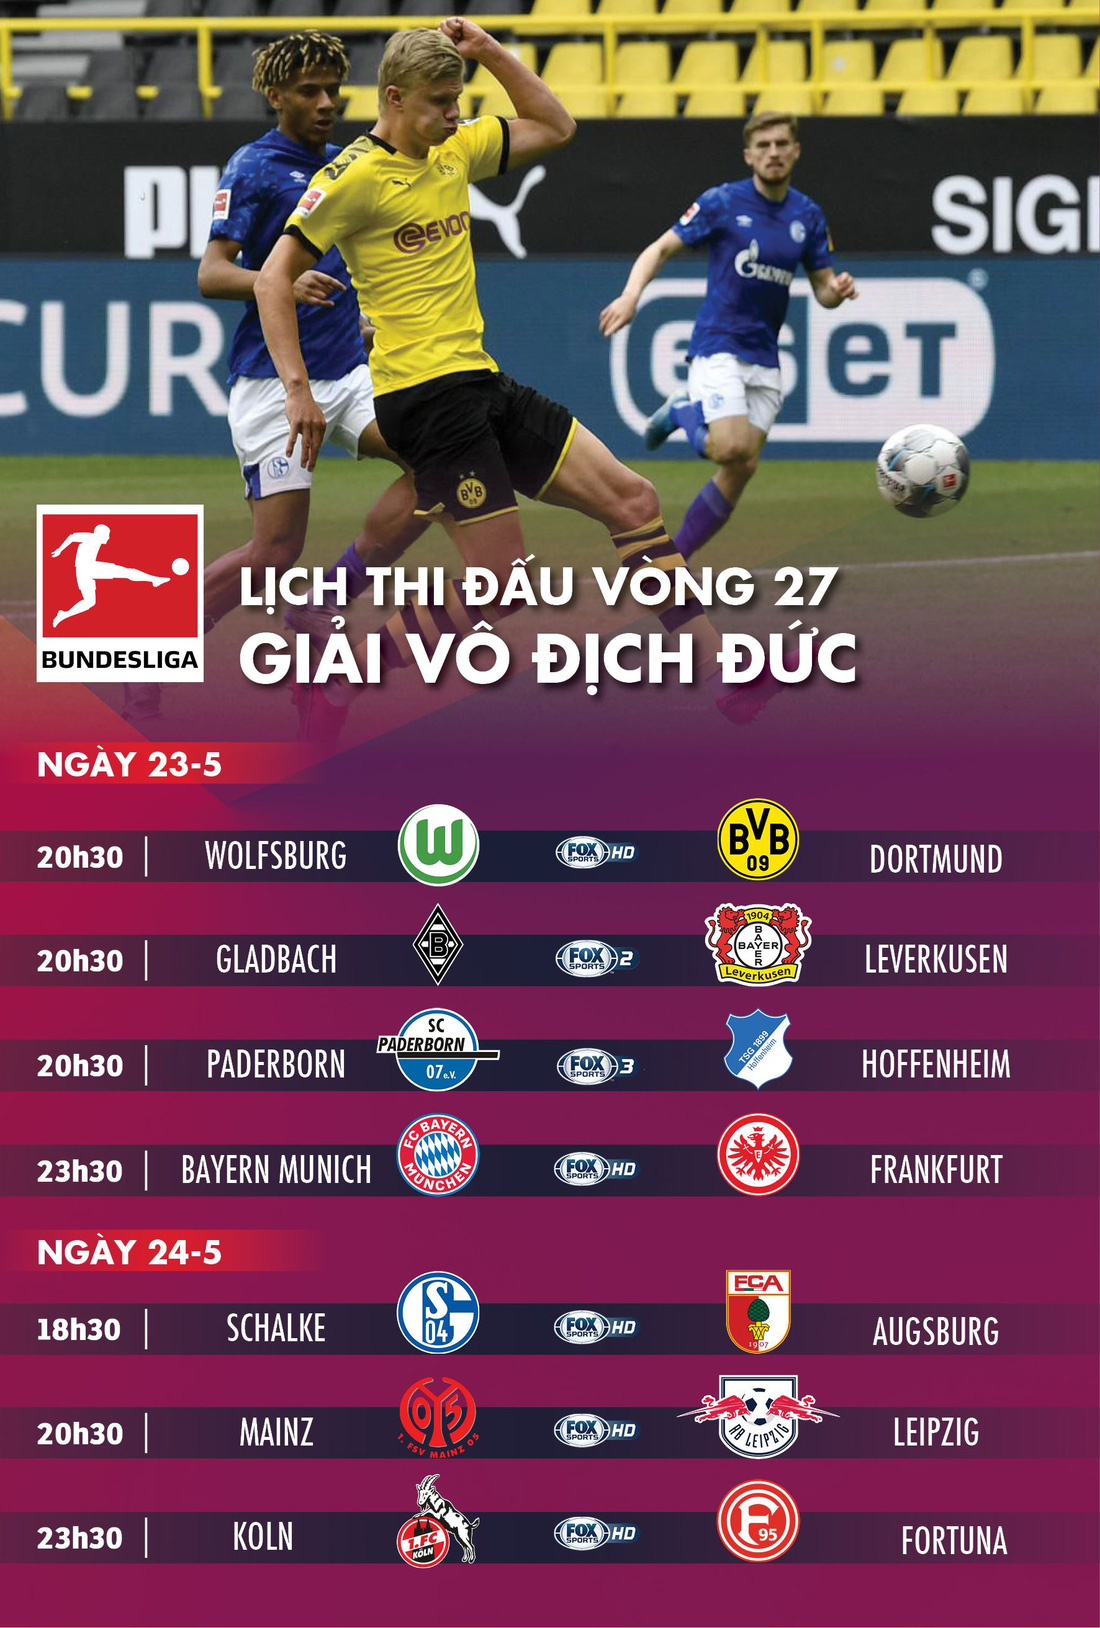 Lịch trực tiếp vòng 27 Bundesliga hôm nay 23-5 - Ảnh 1.